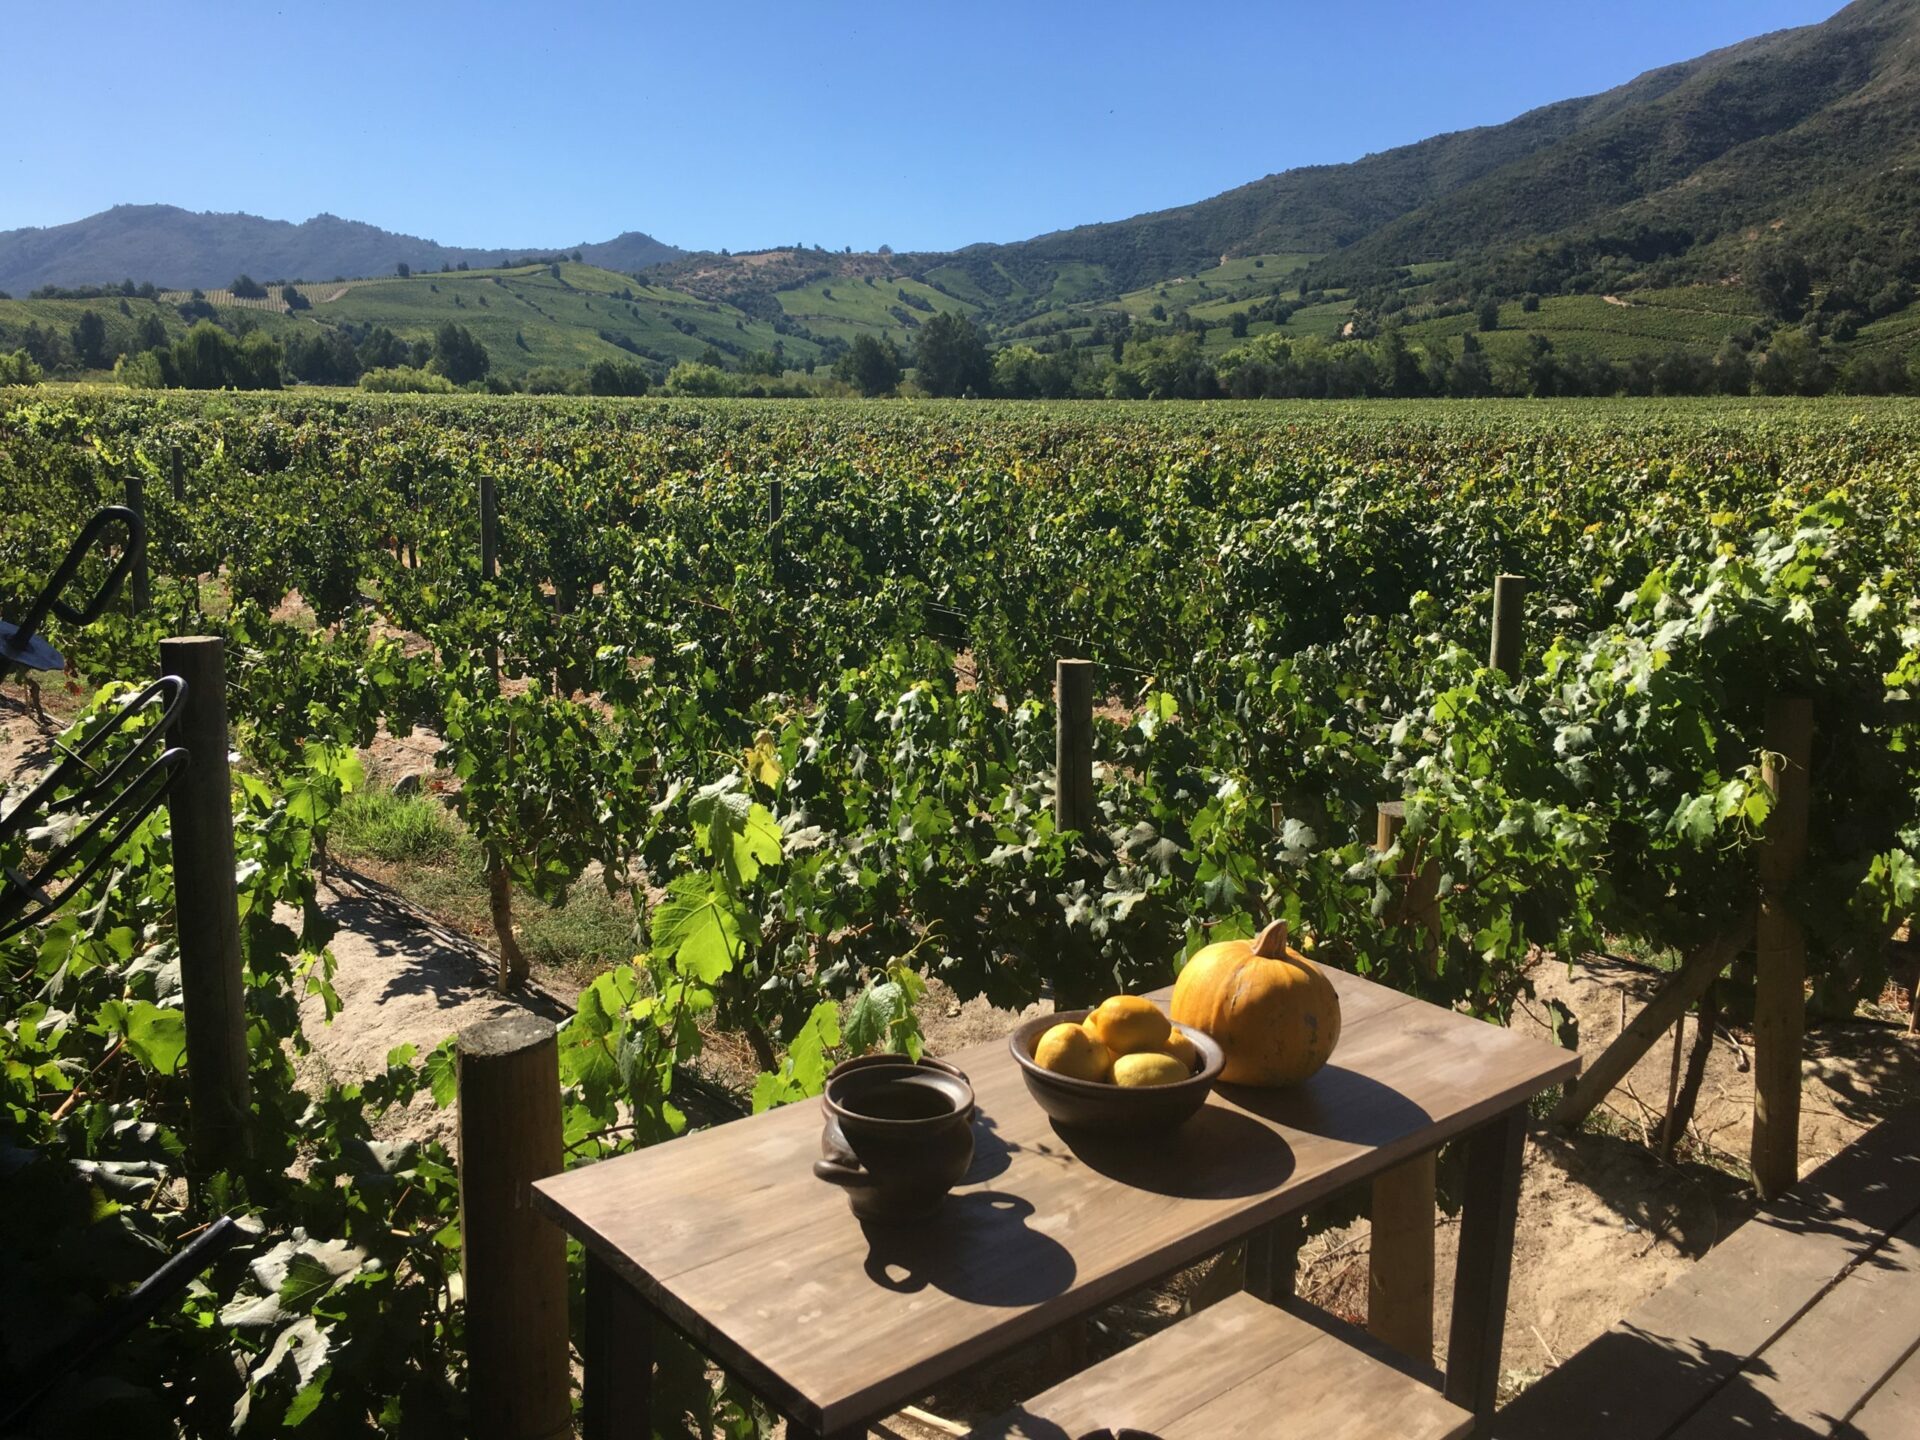 colchagua valley vineyards seen from Fuegos de Apalta